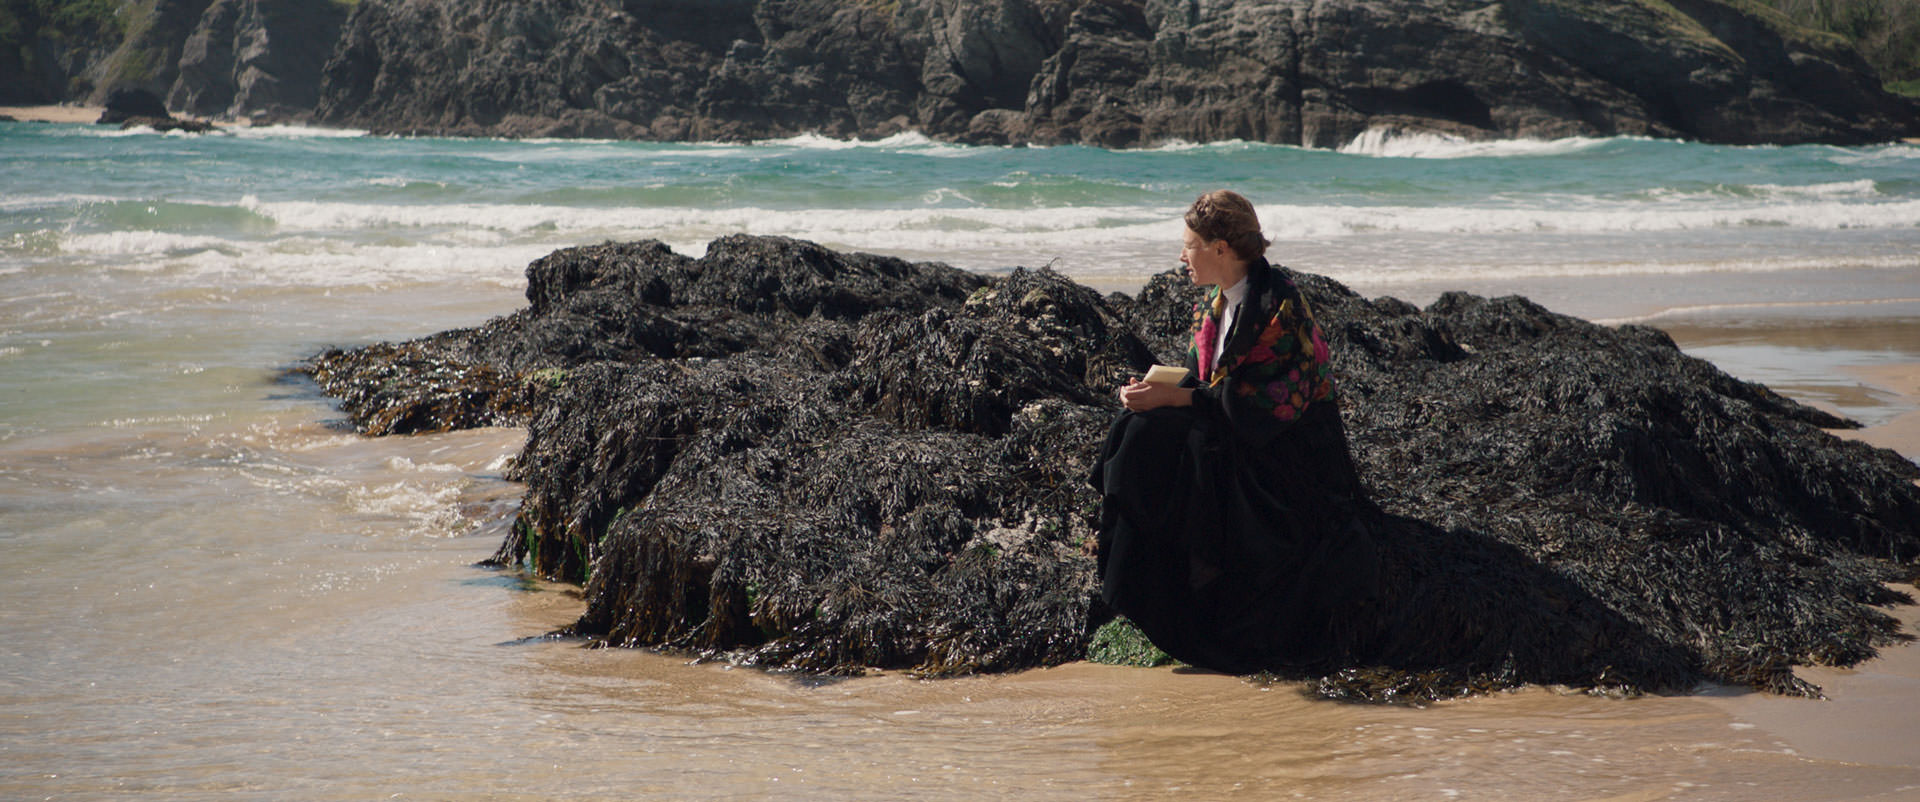 ناتالی بودفو نشسته روی سخره‌هایی کنار دریا در نمایی از فیلم یک زوج به کارگردانی فردریک وایزمن